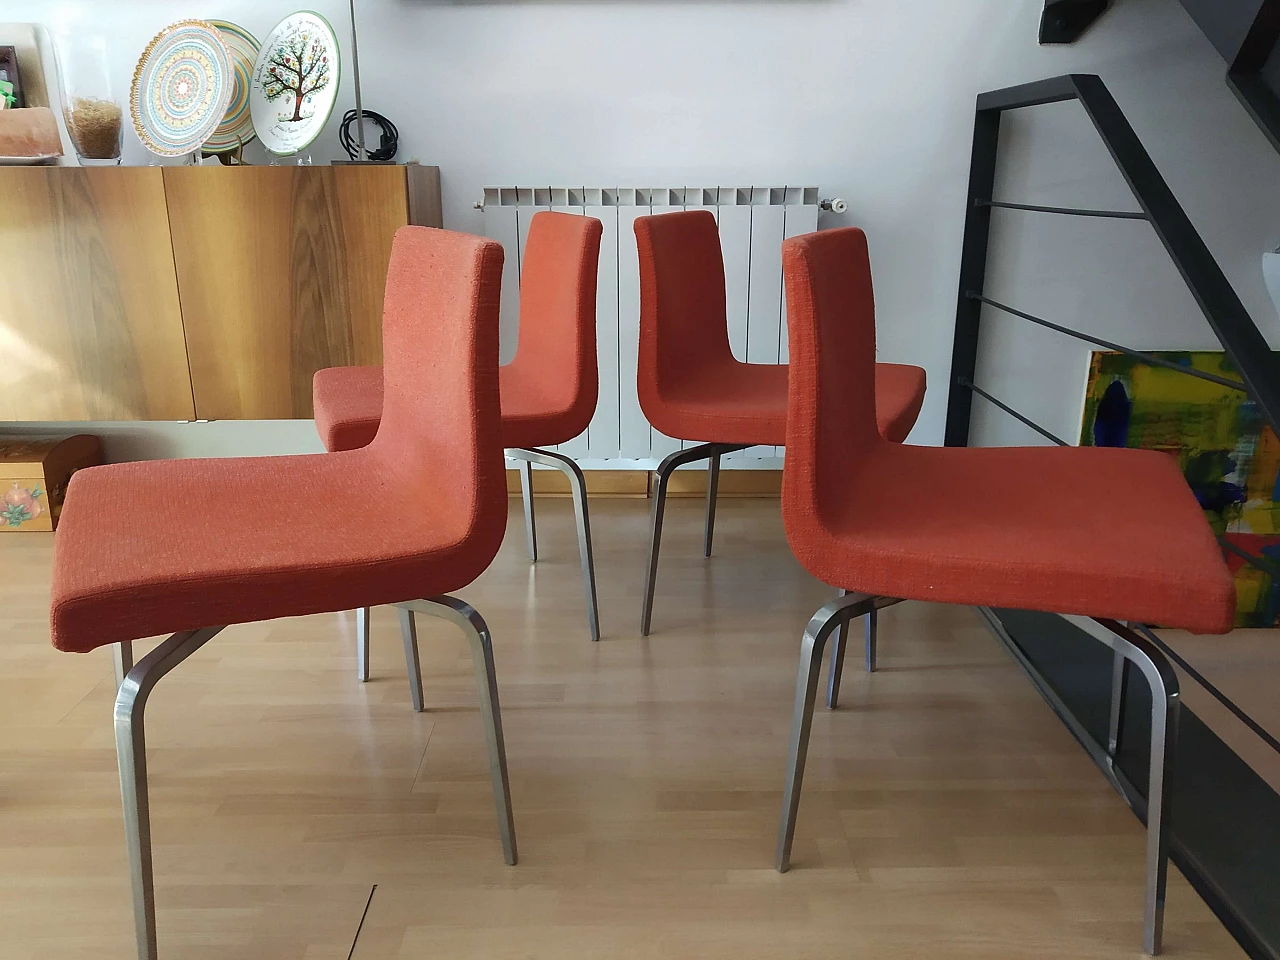 4 Hella Chairs by Mauro Lipparini for MisuraEmme 1477203